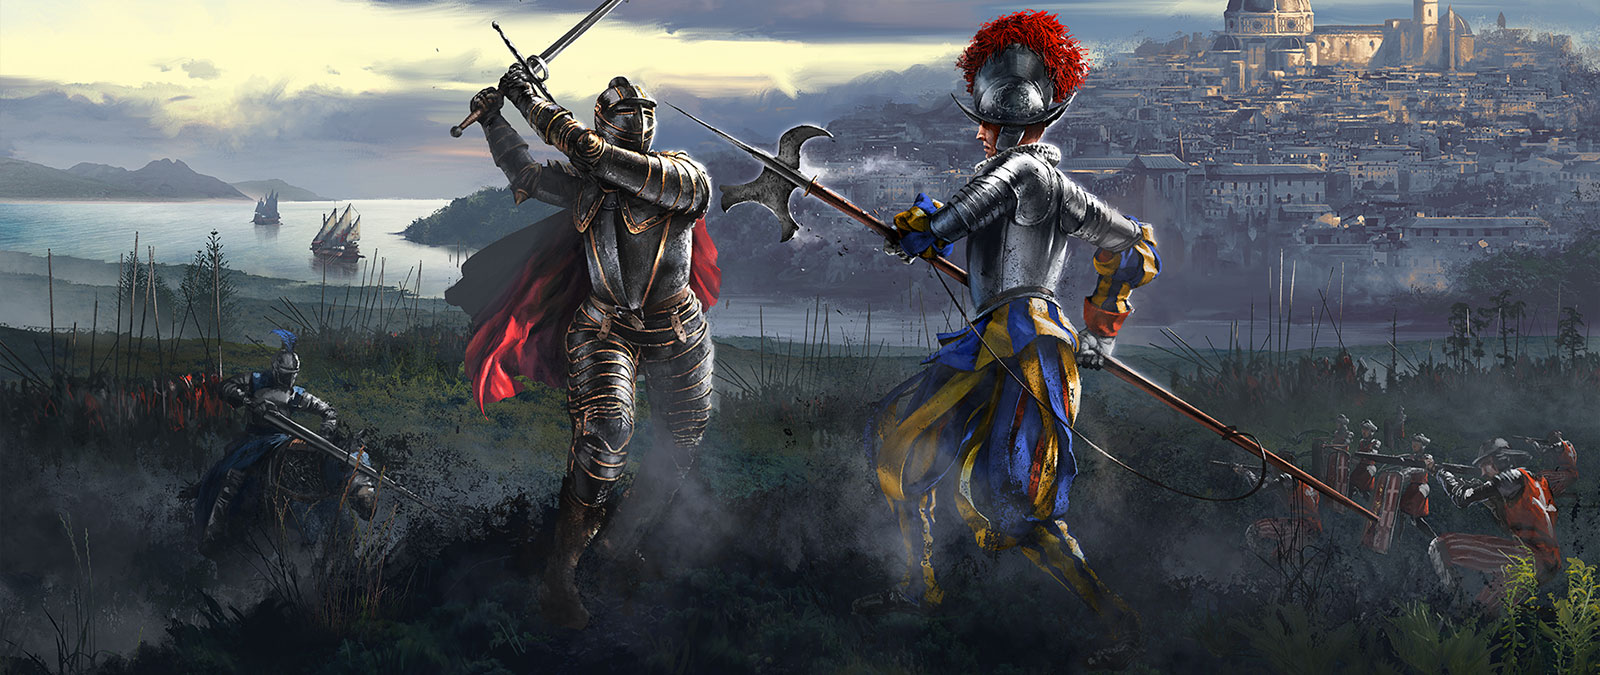 Dois cavaleiros se chocam enquanto seus exércitos se preparam para lutar.